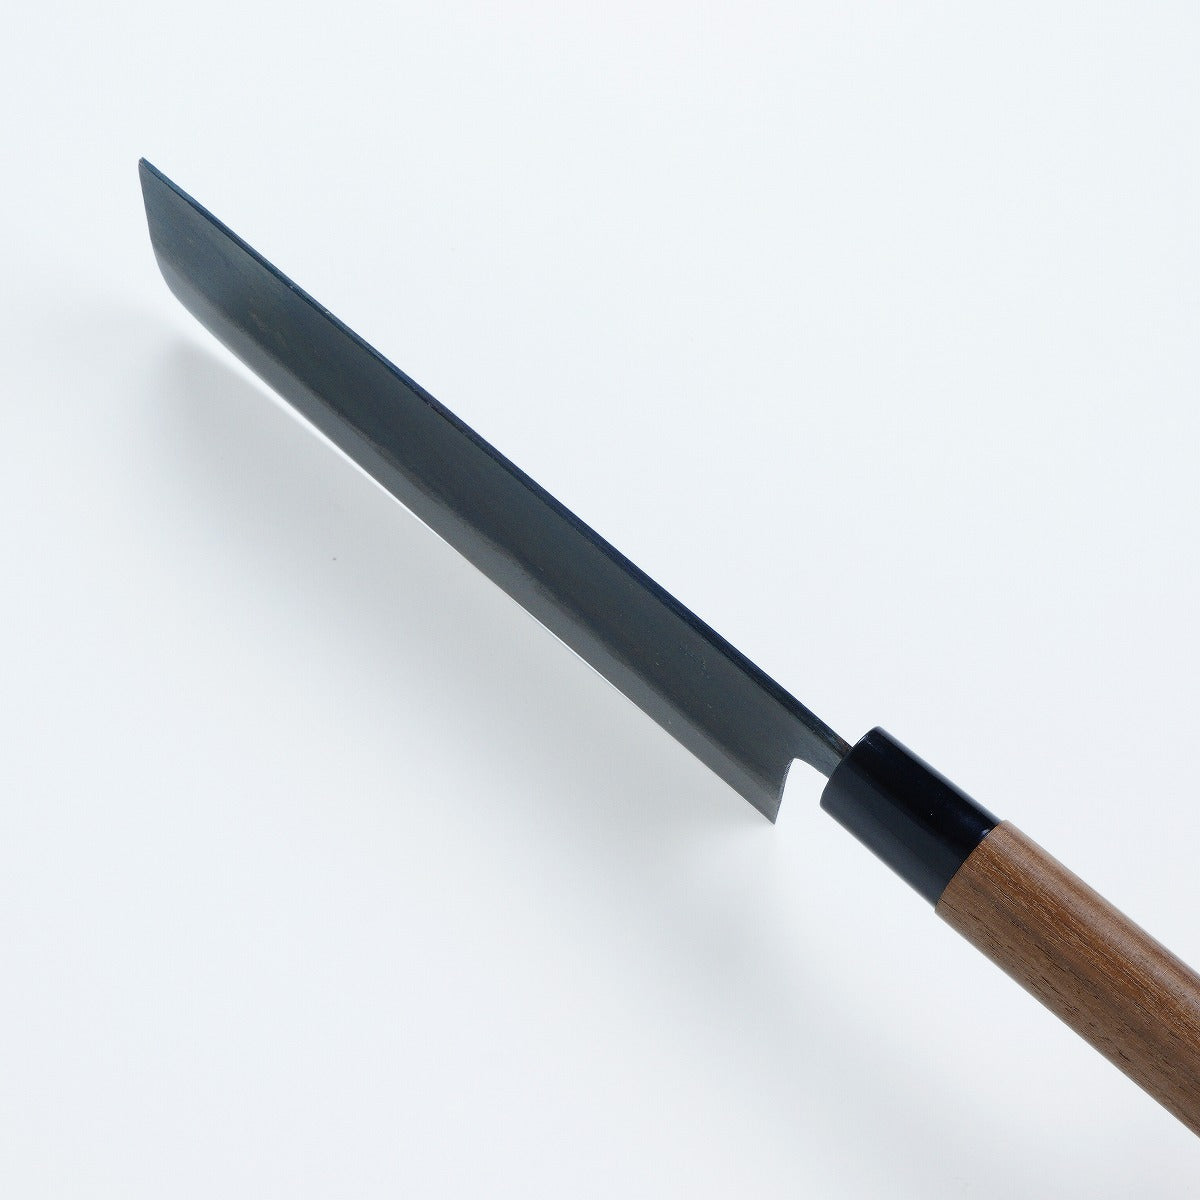 HONMAMON "MOTOKANE" Nakiri Kurouchi (Vegetable Knife) Aogami Steel No.1, 165mm